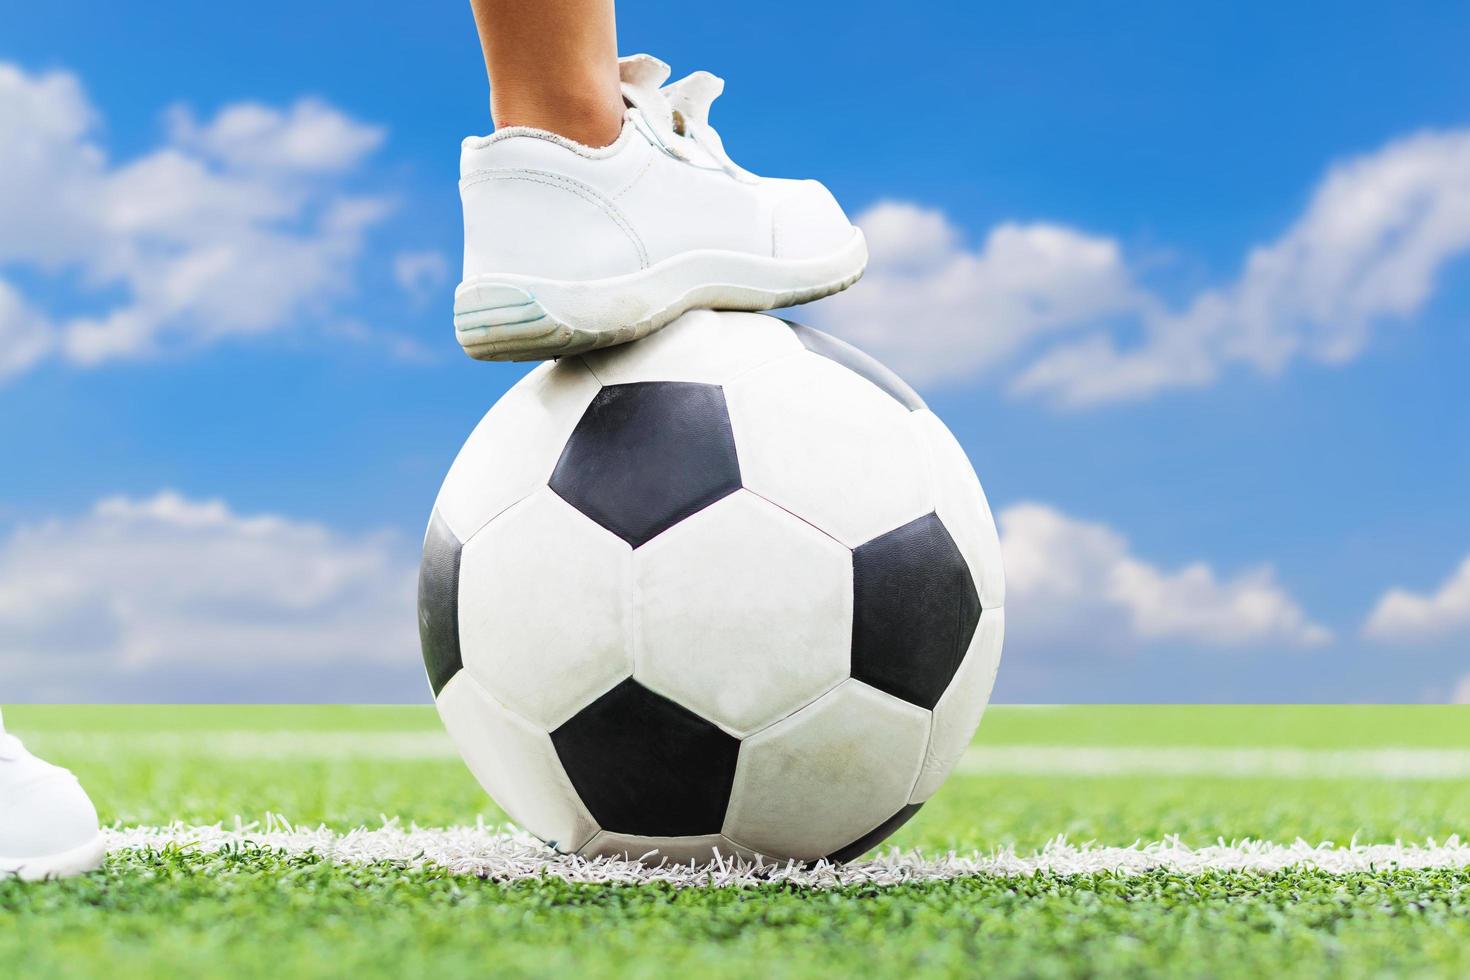 pies de un niño con zapatillas blancas pisando un balón de fútbol. foto